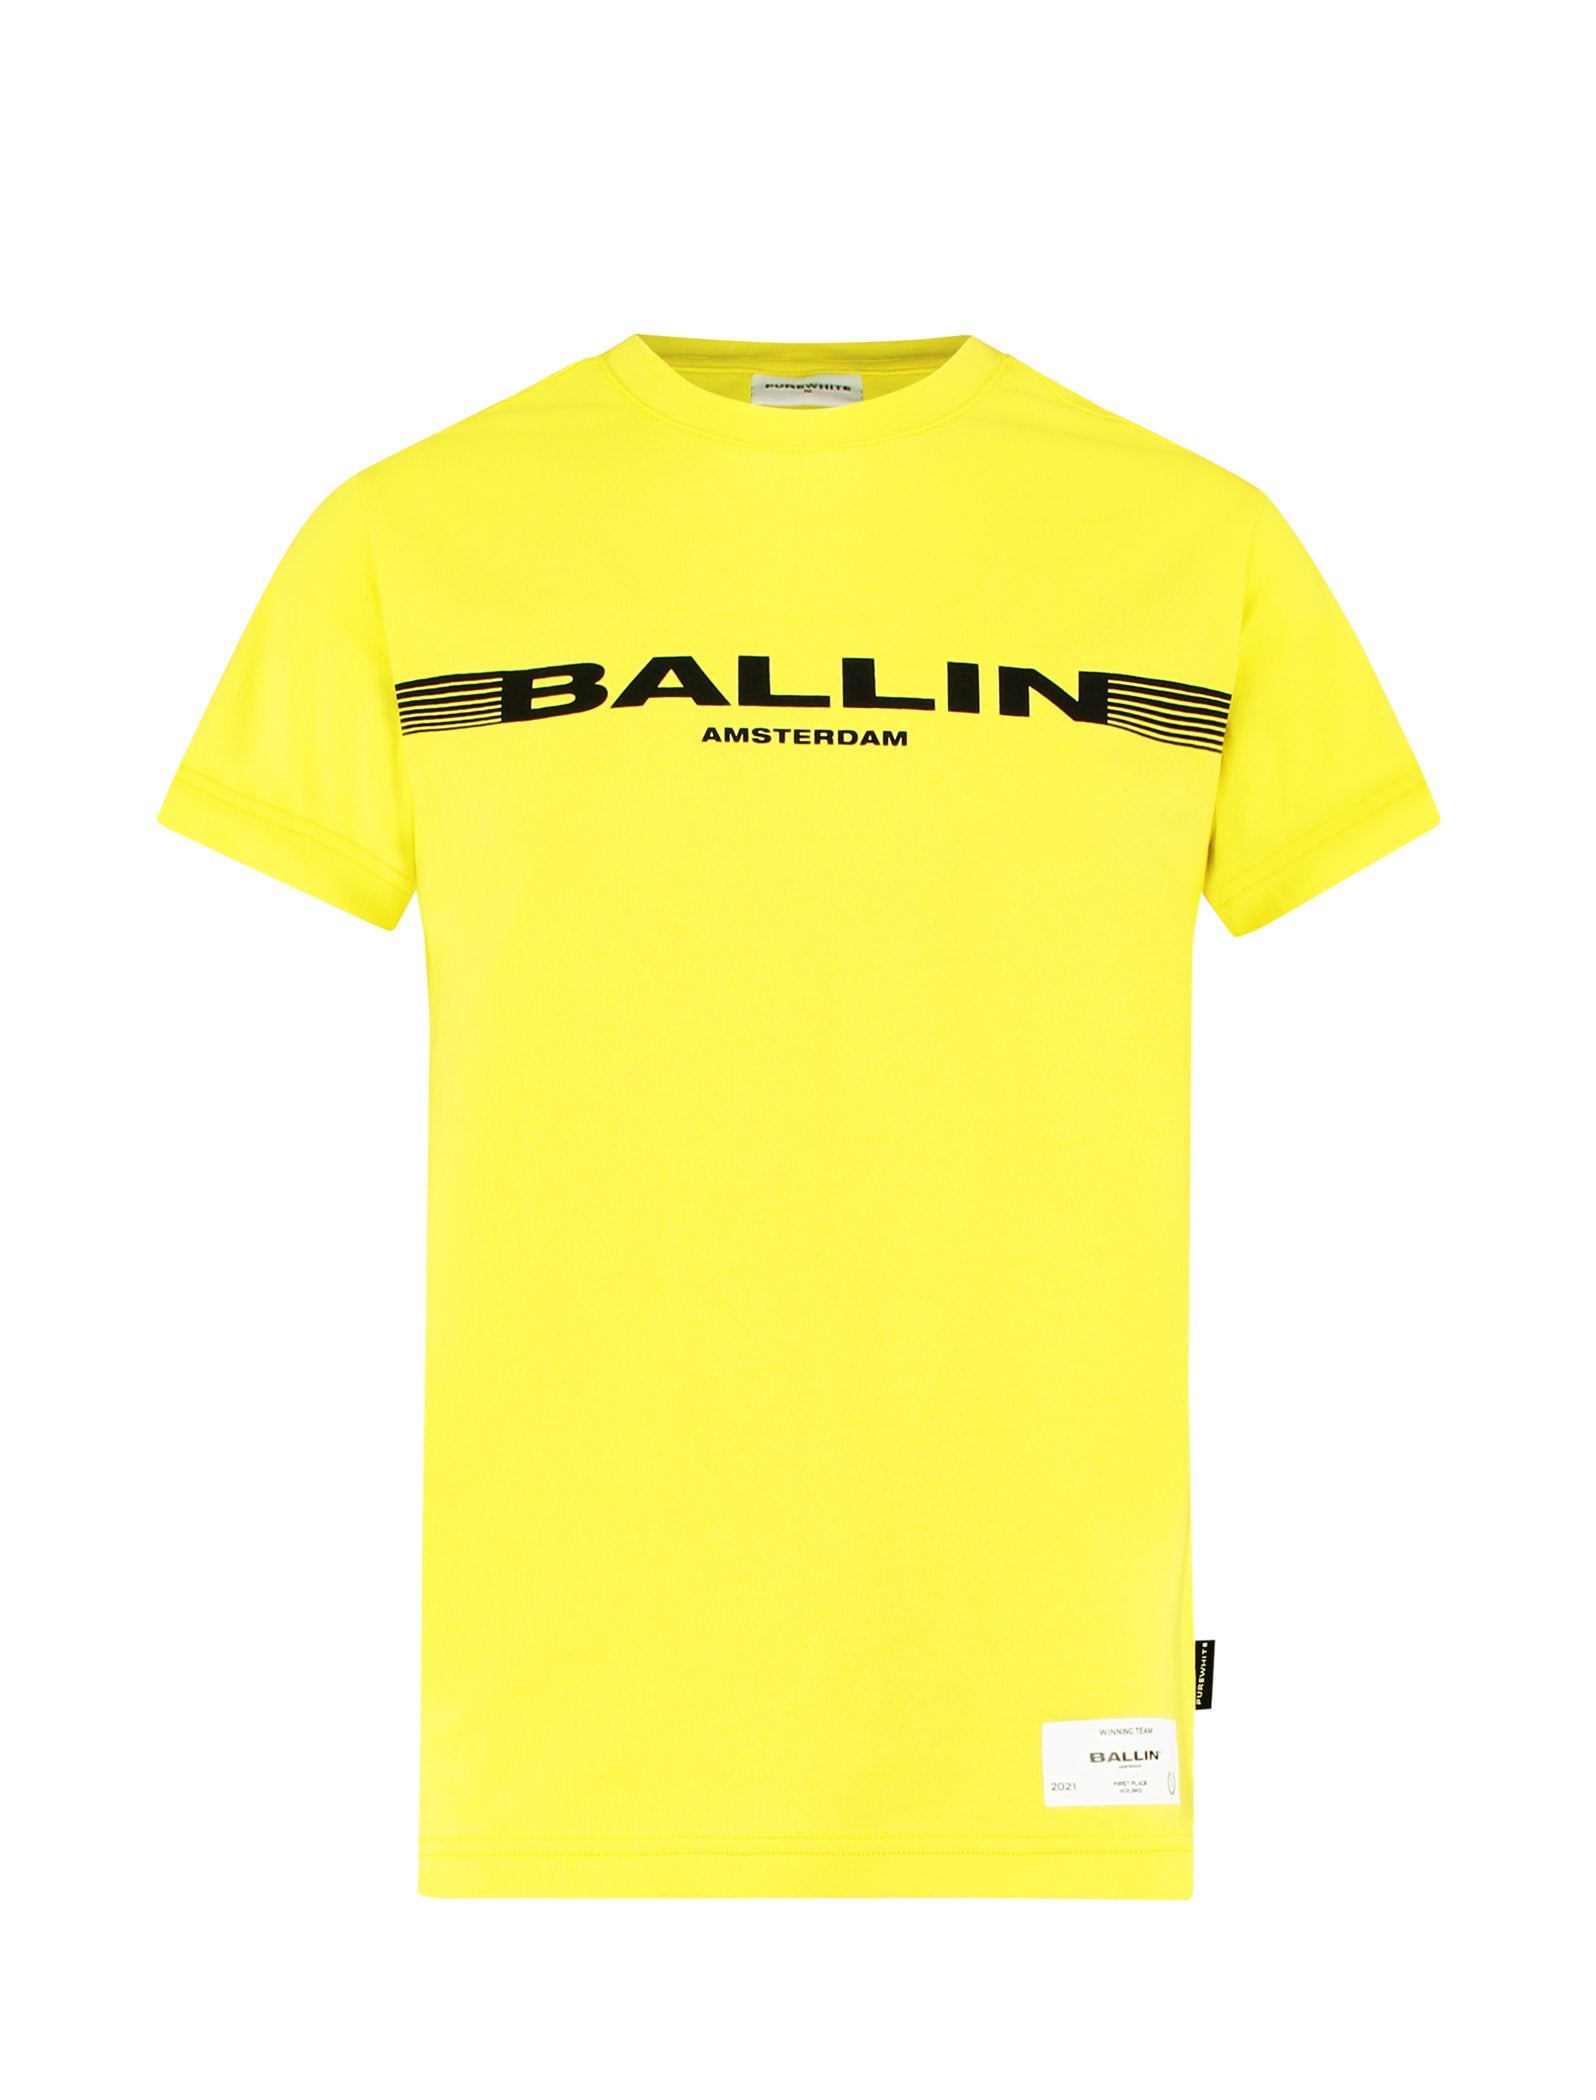 Jongens T-shirt Yellow van Ballin Amsterdam in de kleur Yellow in maat 176.